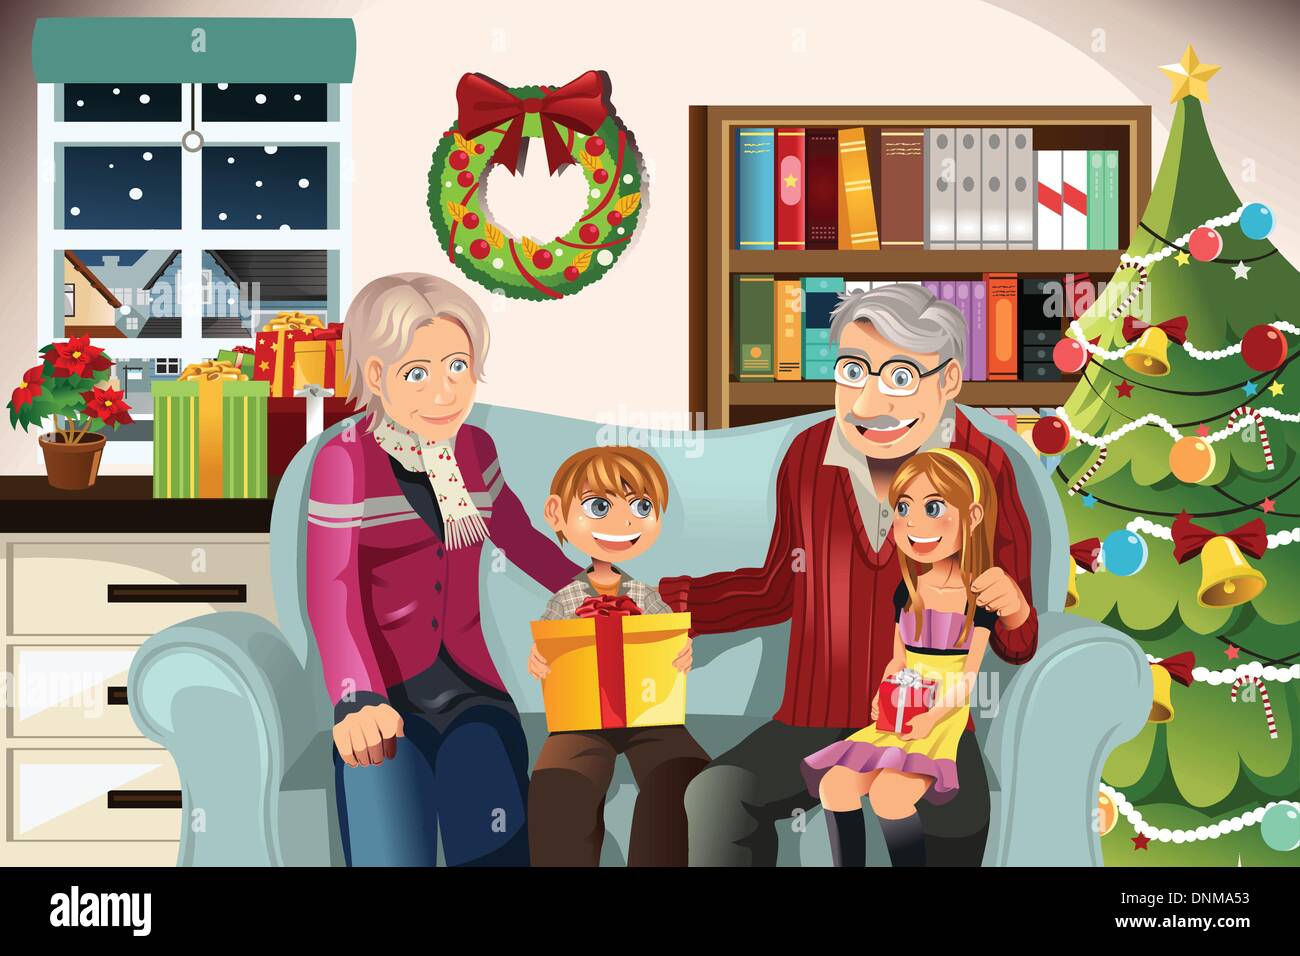 Eine Vektor-Illustration von Großeltern ihren Enkeln Weihnachtsgeschenke verleihen Stock Vektor